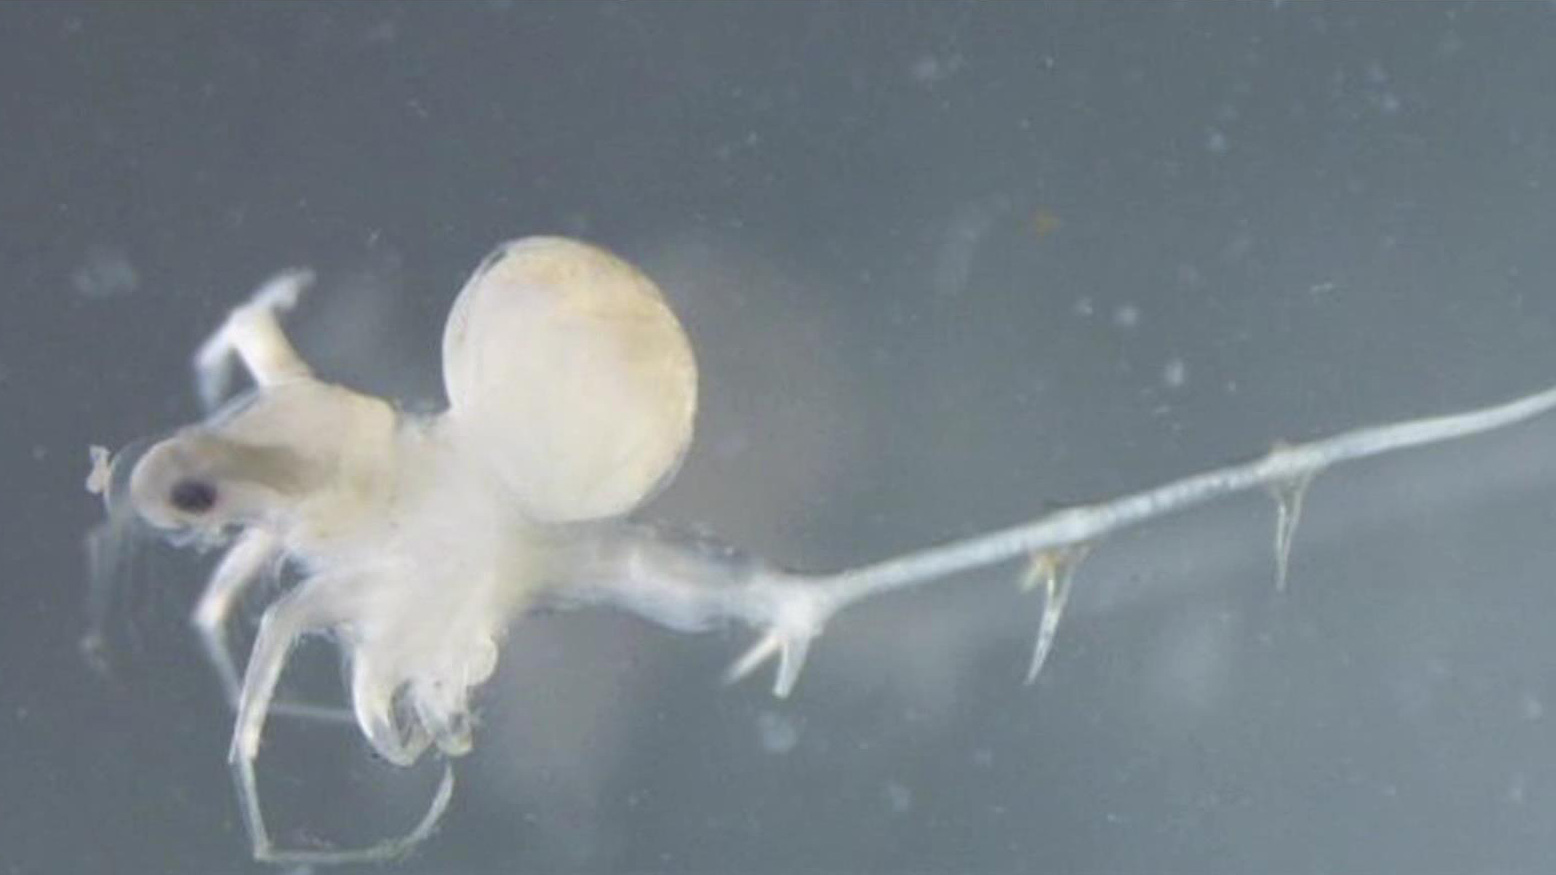 Invasive 'water fleas' continue decades-long spread